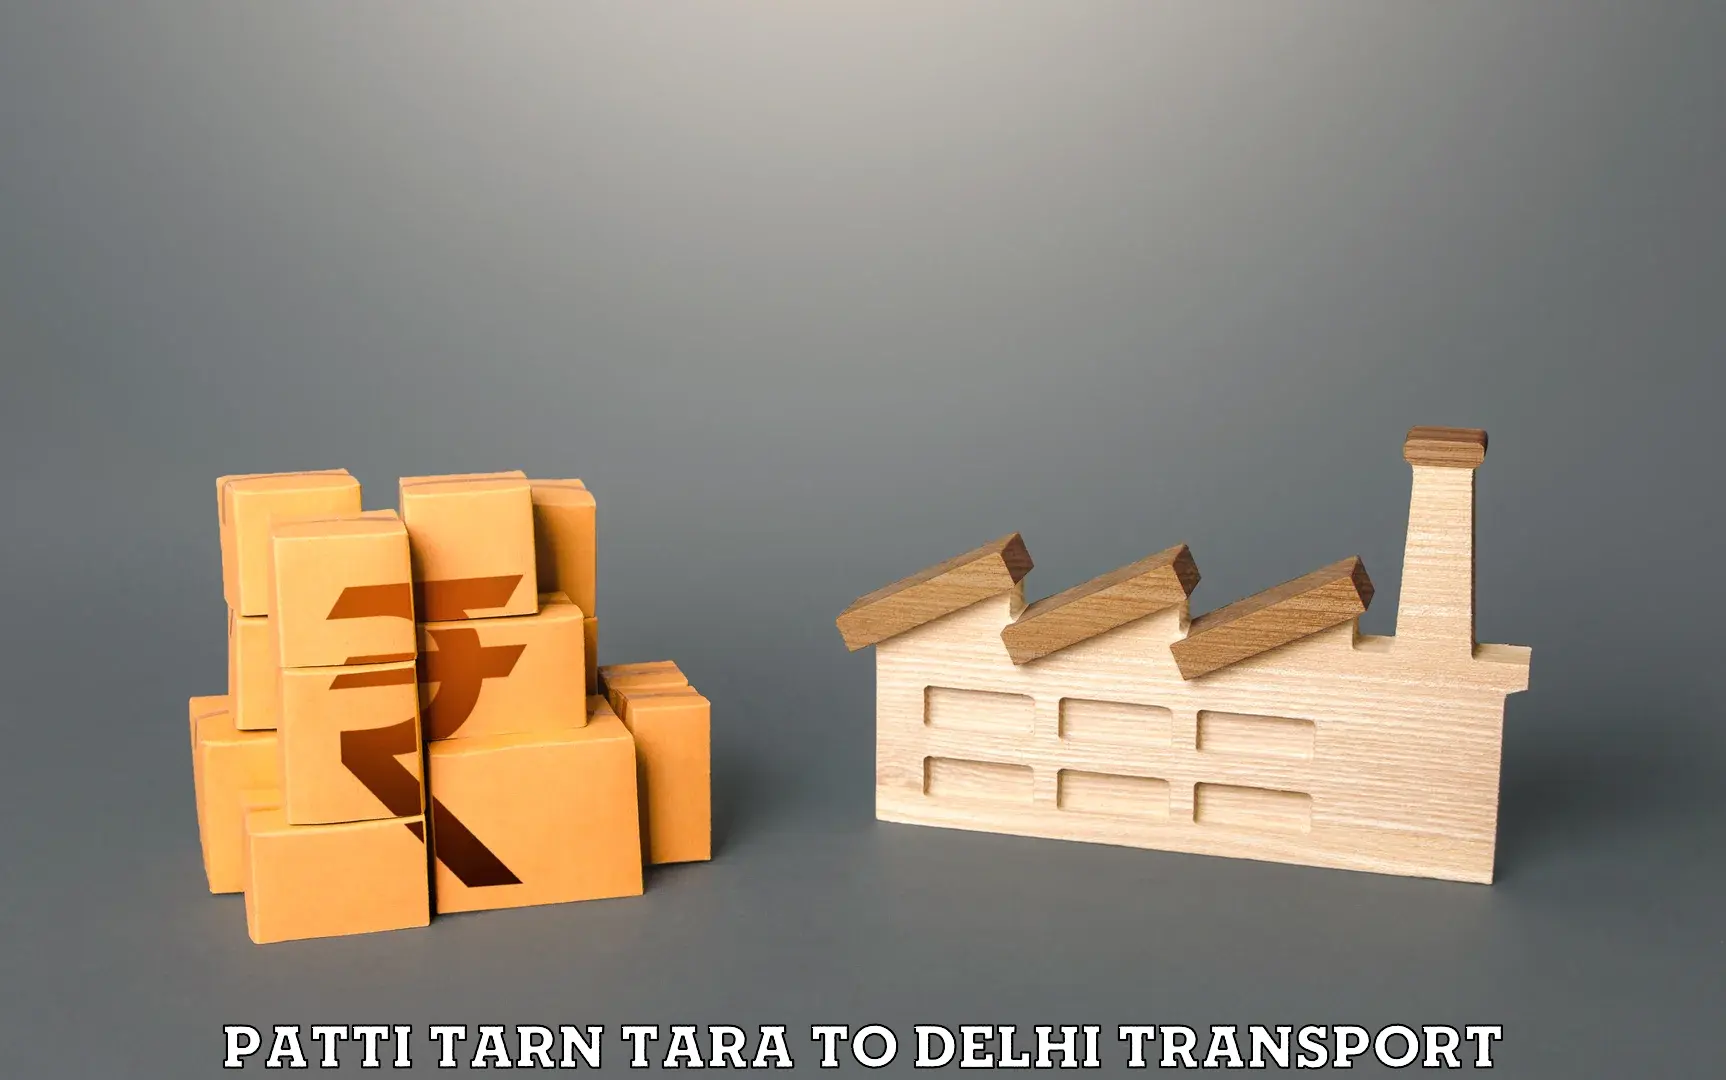 Bike shipping service Patti Tarn Tara to IIT Delhi